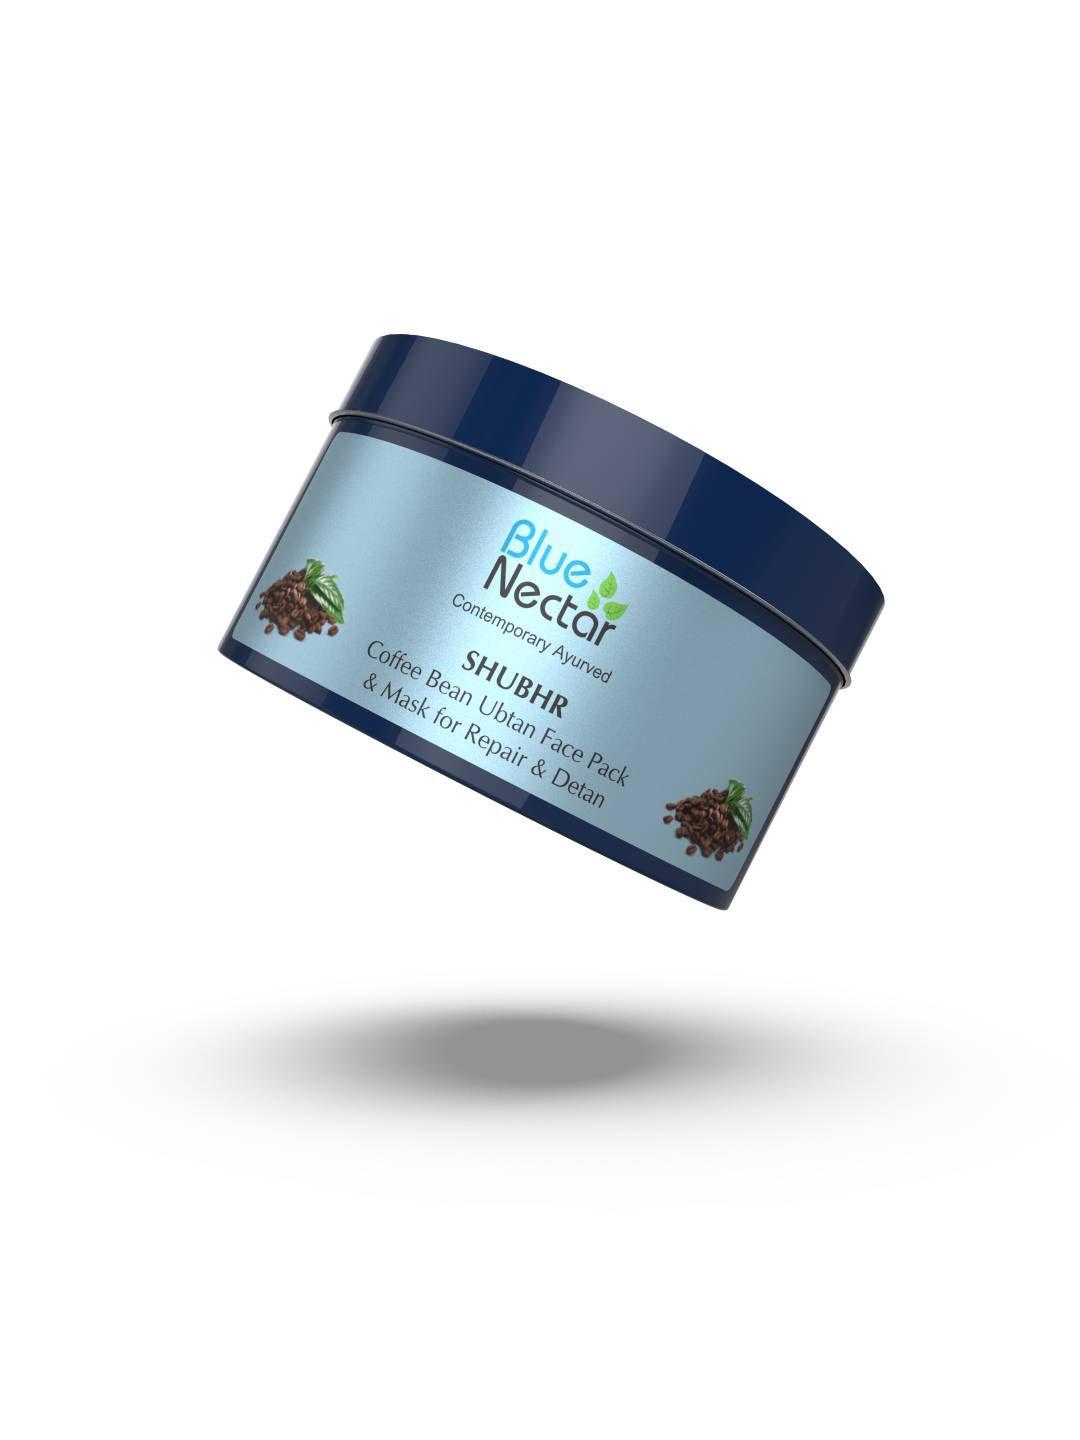 blue nectar shubhr coffee bean ubtan face pack & mask for skin repair & detan - 100 g